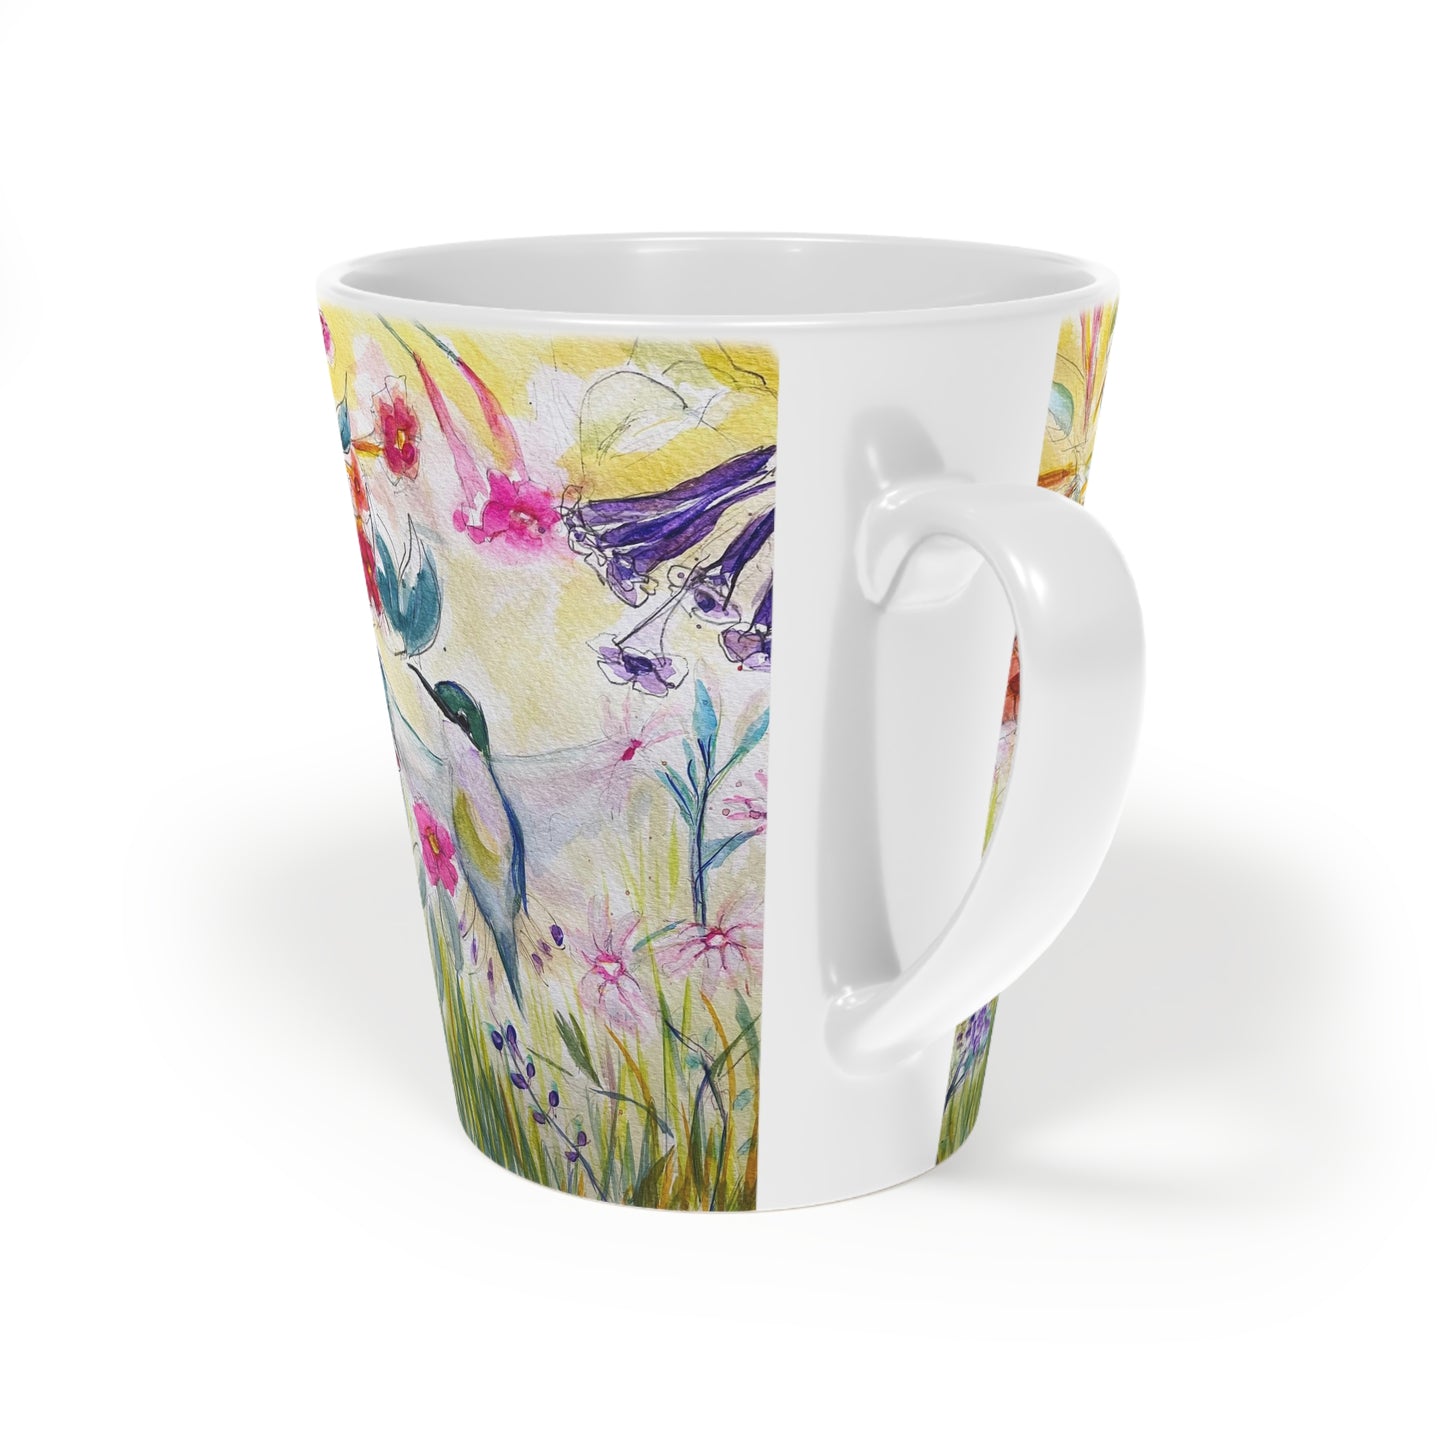 Hummingbird in a Tube Flower Garden Latte Mug, 12oz